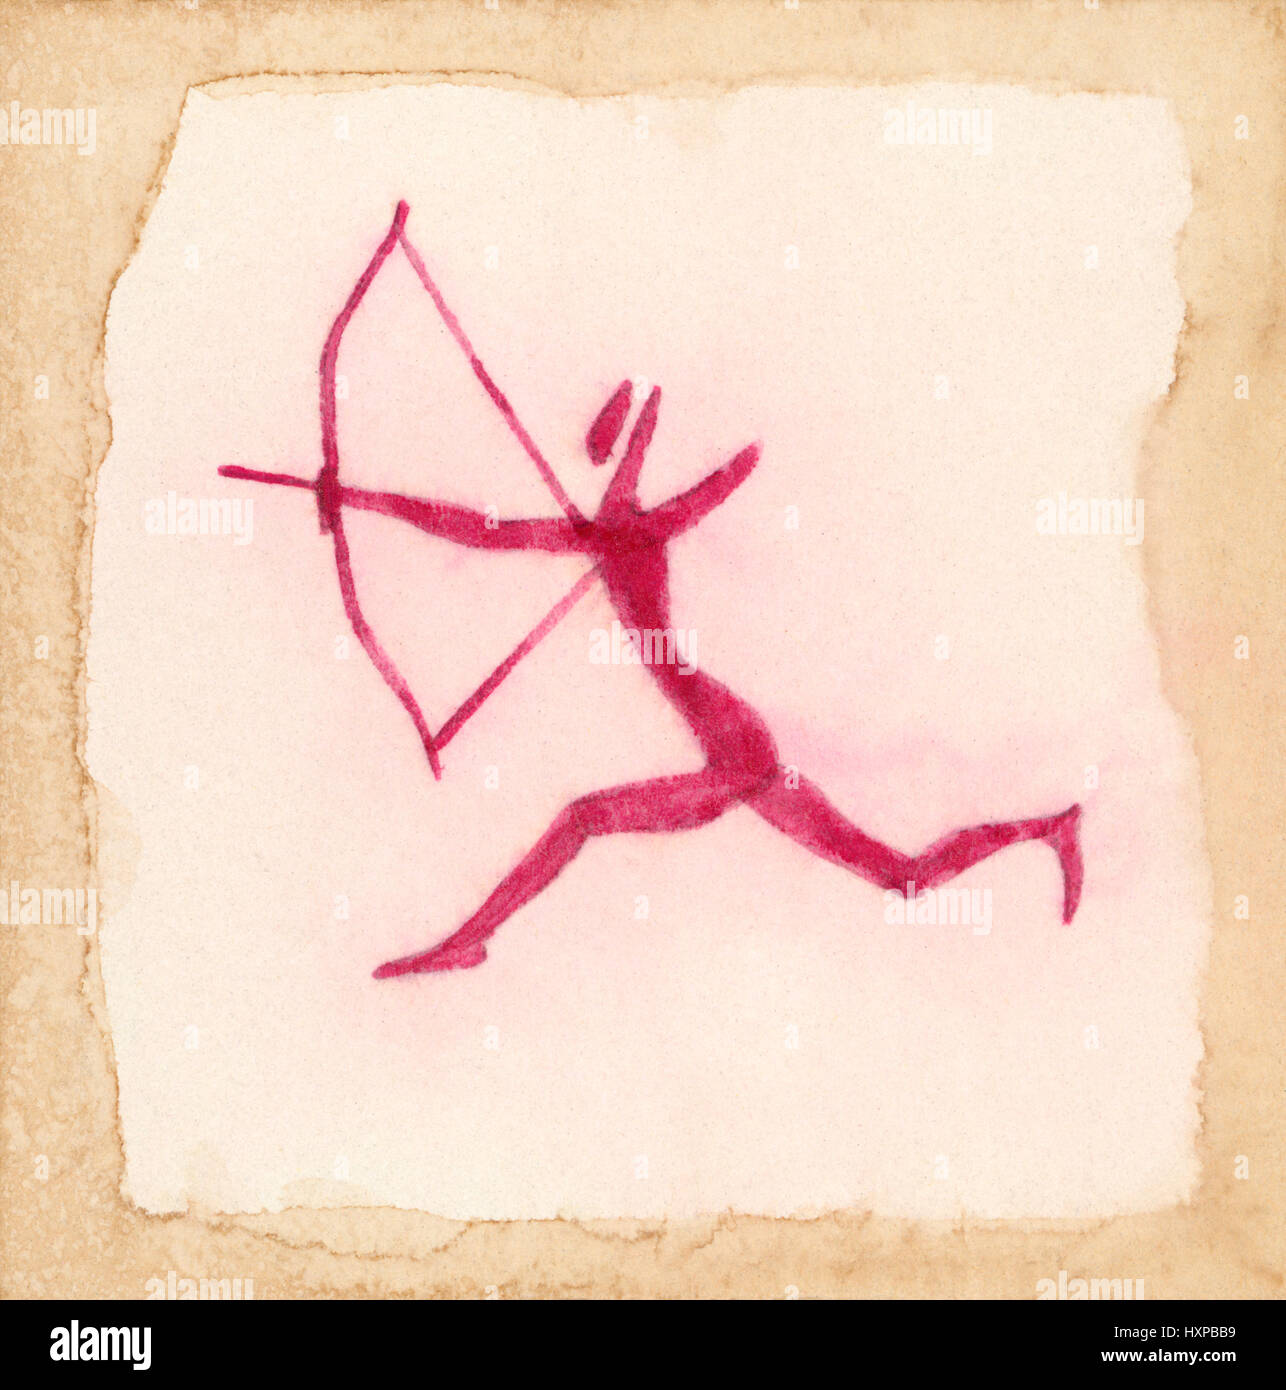 L'exécution de la chasse archer. Dessin primitif inspiré par l'art pariétal ancien du Sahara. De l'encre rouge sur papier. Banque D'Images